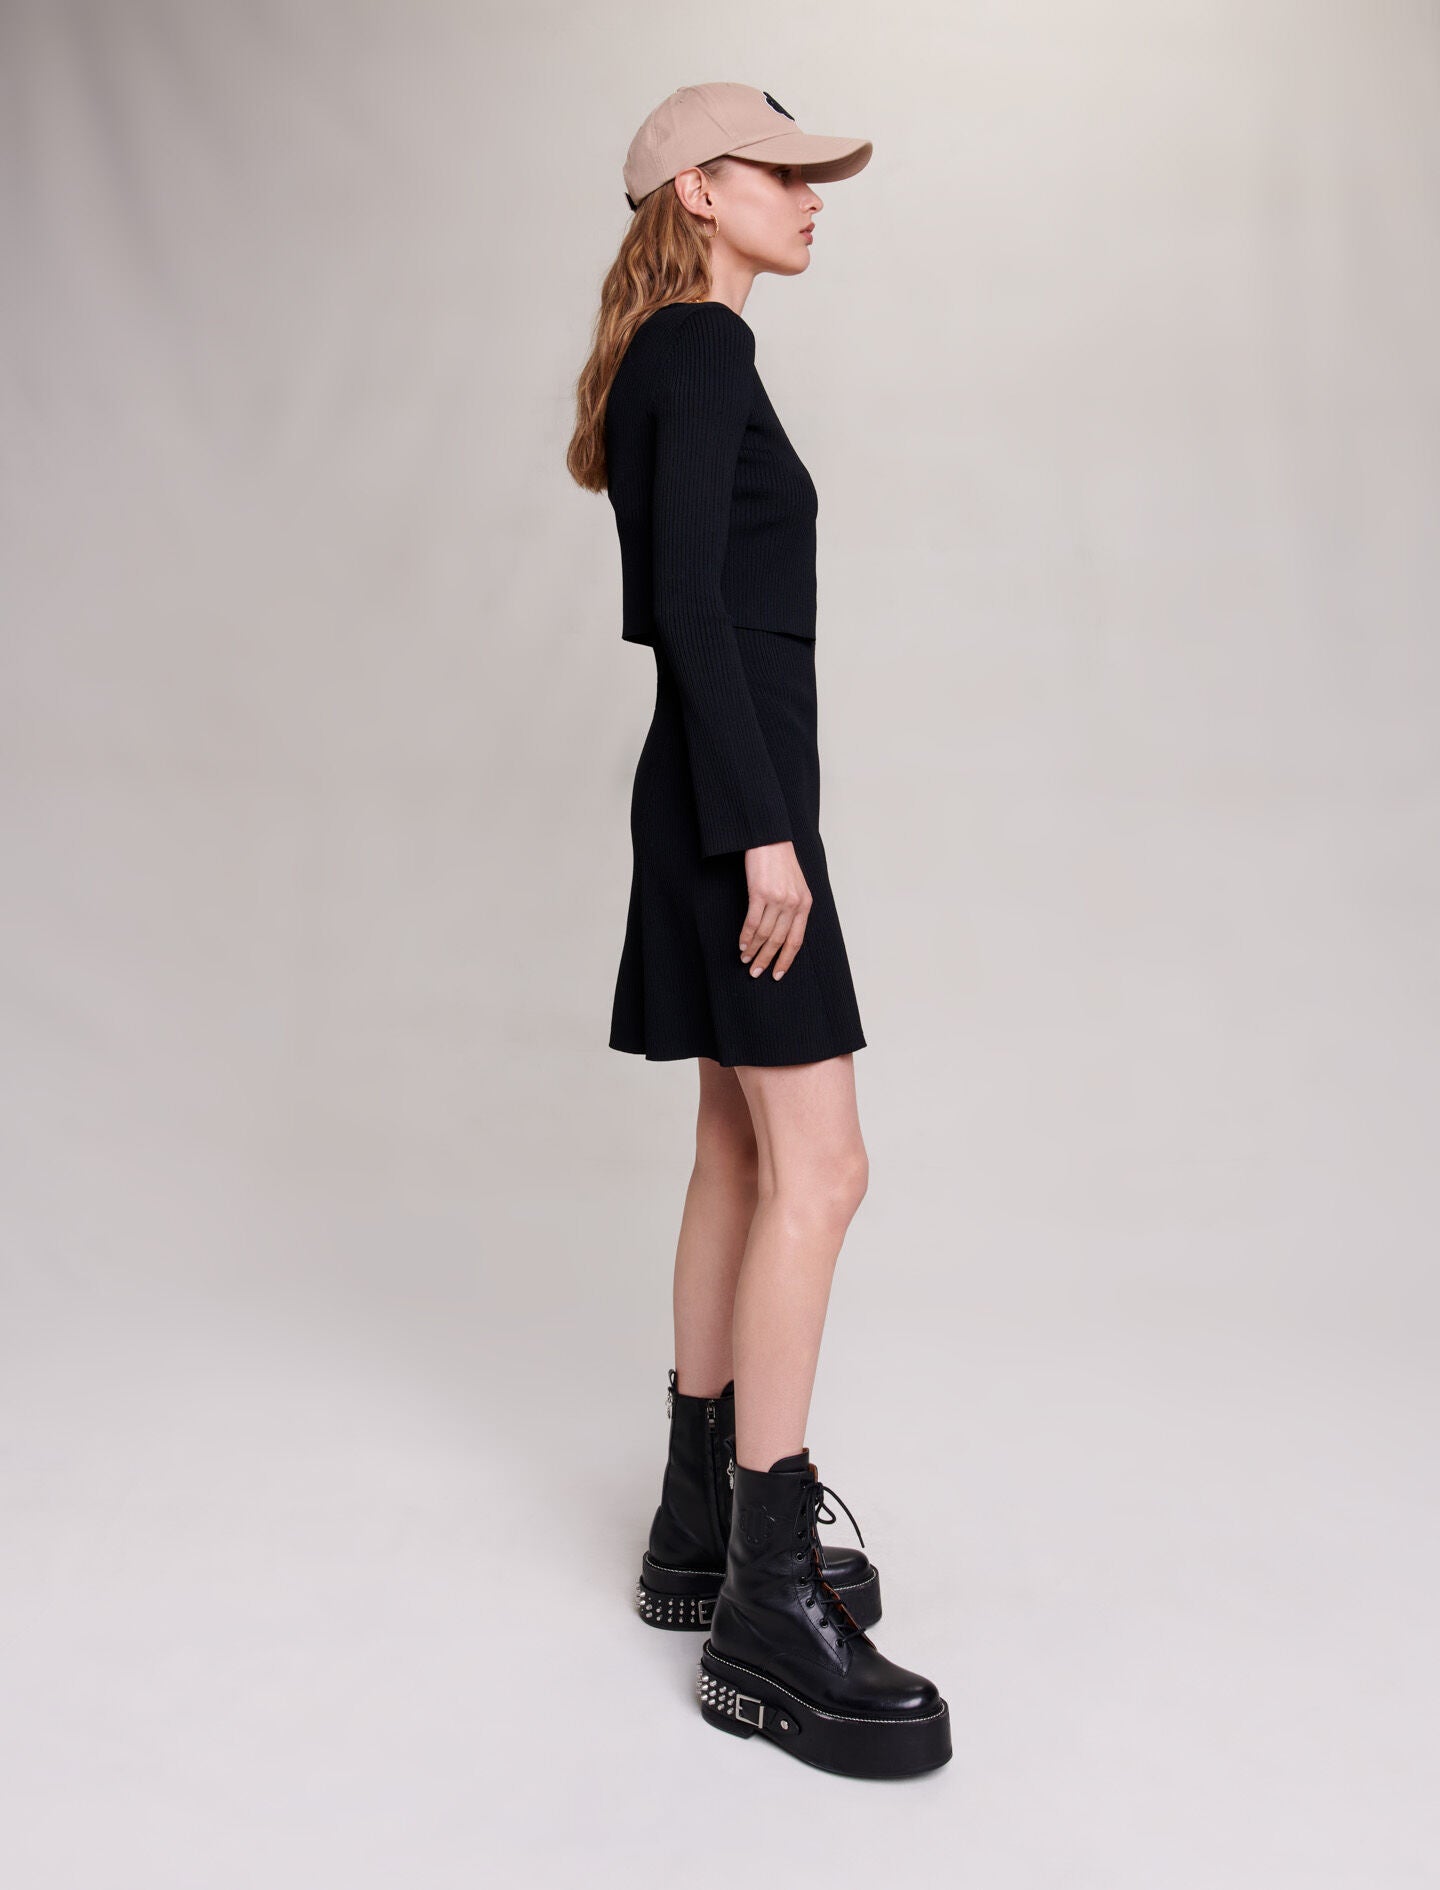 Black-2 in 1 knit dress